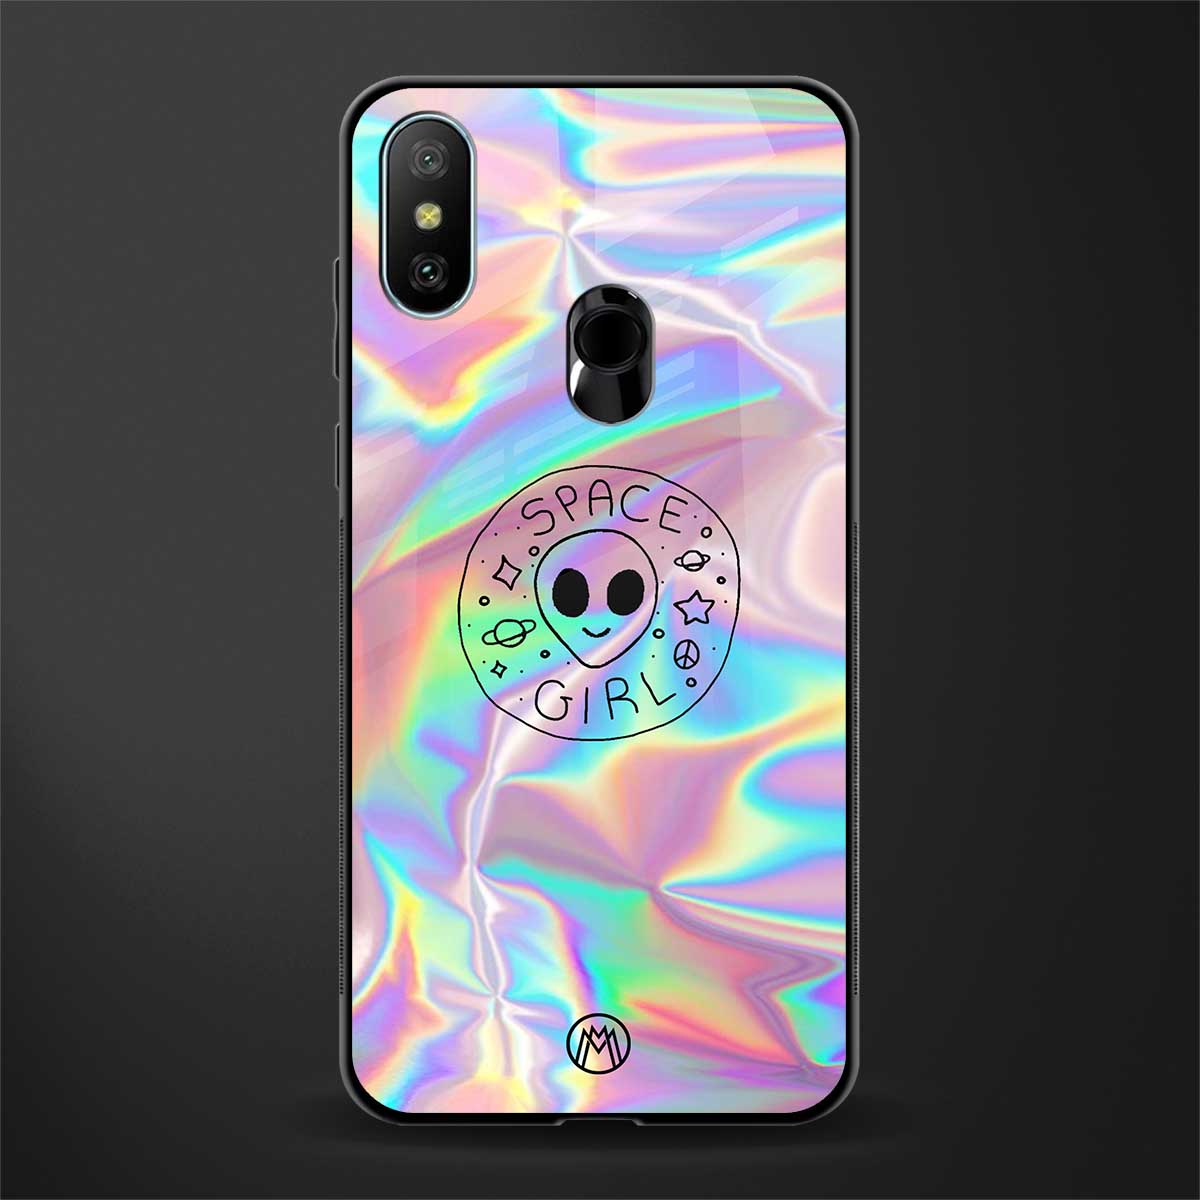 colorful alien glass case for redmi 6 pro image